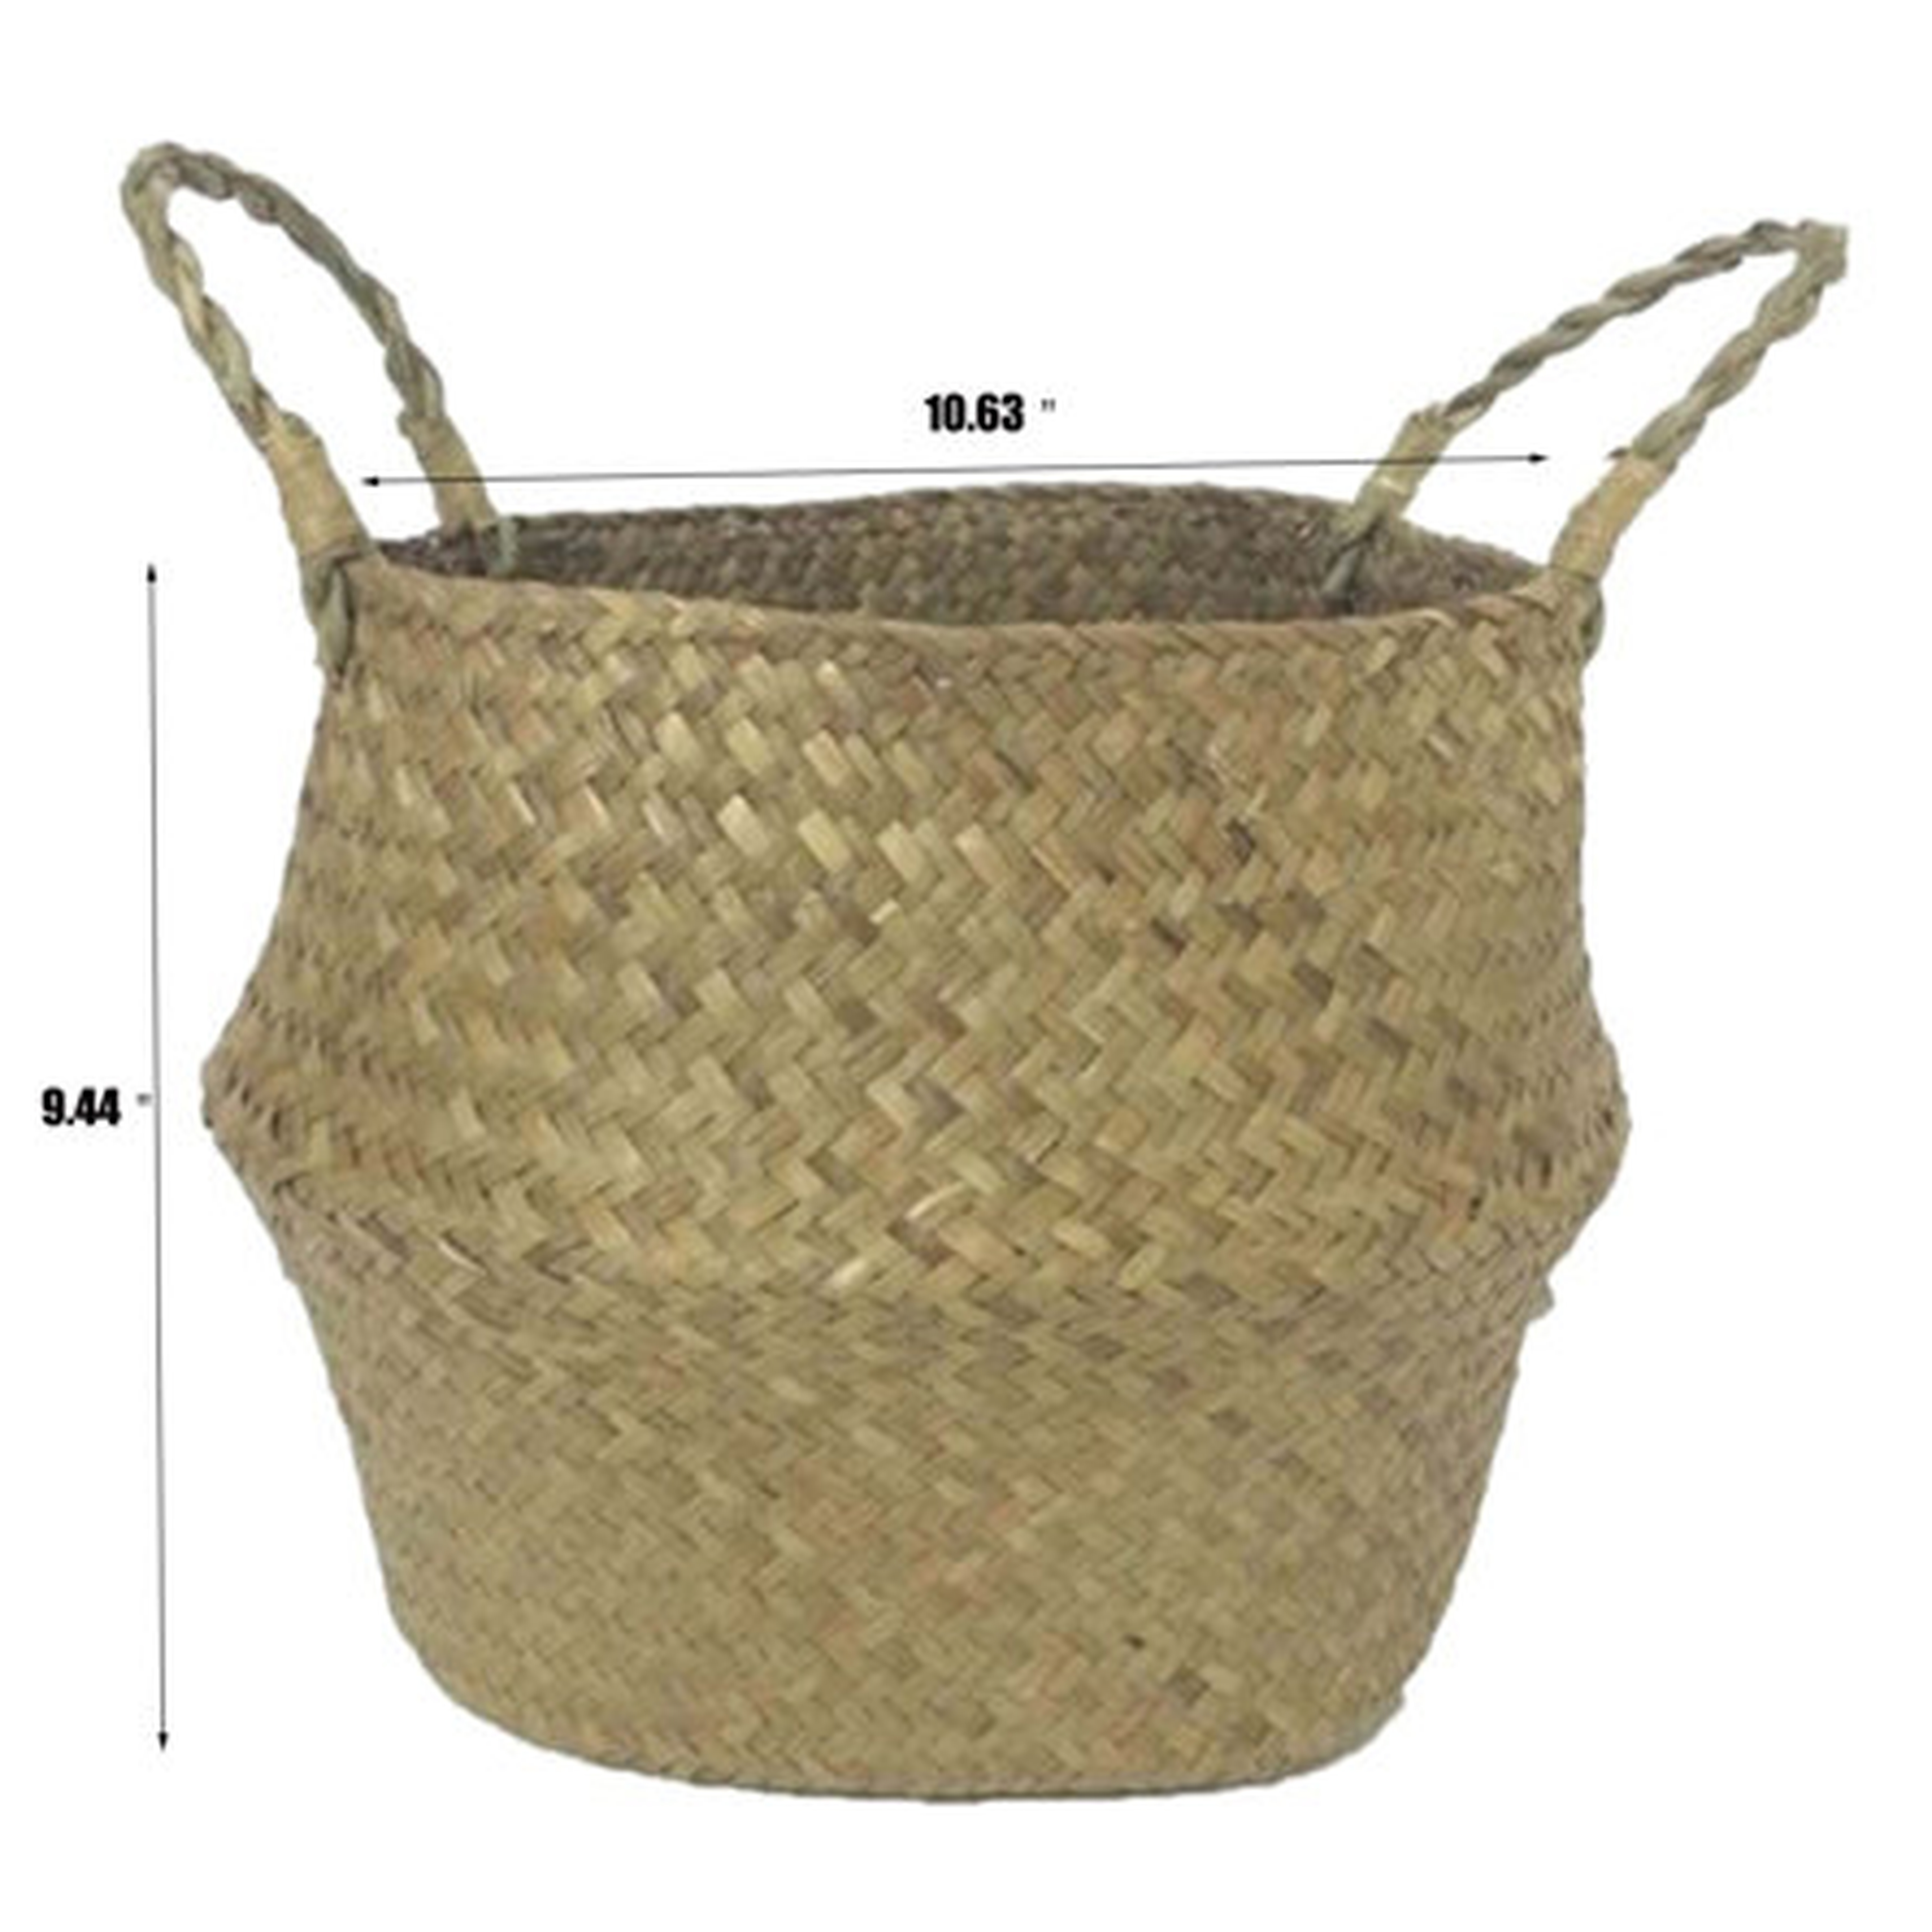 Wicker Storage Baskets Woven Baskets For Storage Pot Planter - Wayfair